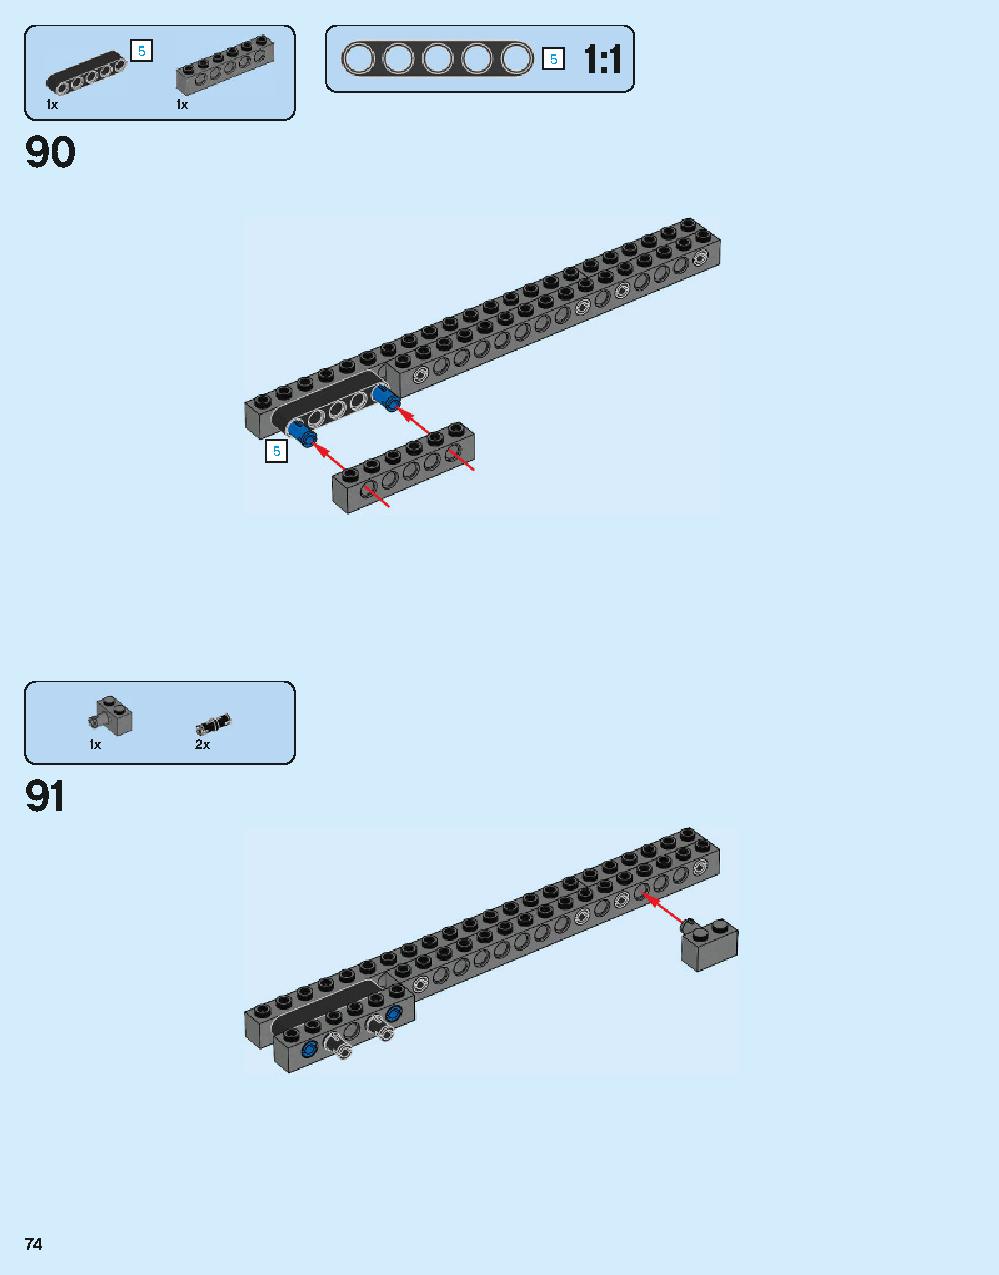 ホグワーツ城 71043 レゴの商品情報 レゴの説明書・組立方法 74 page